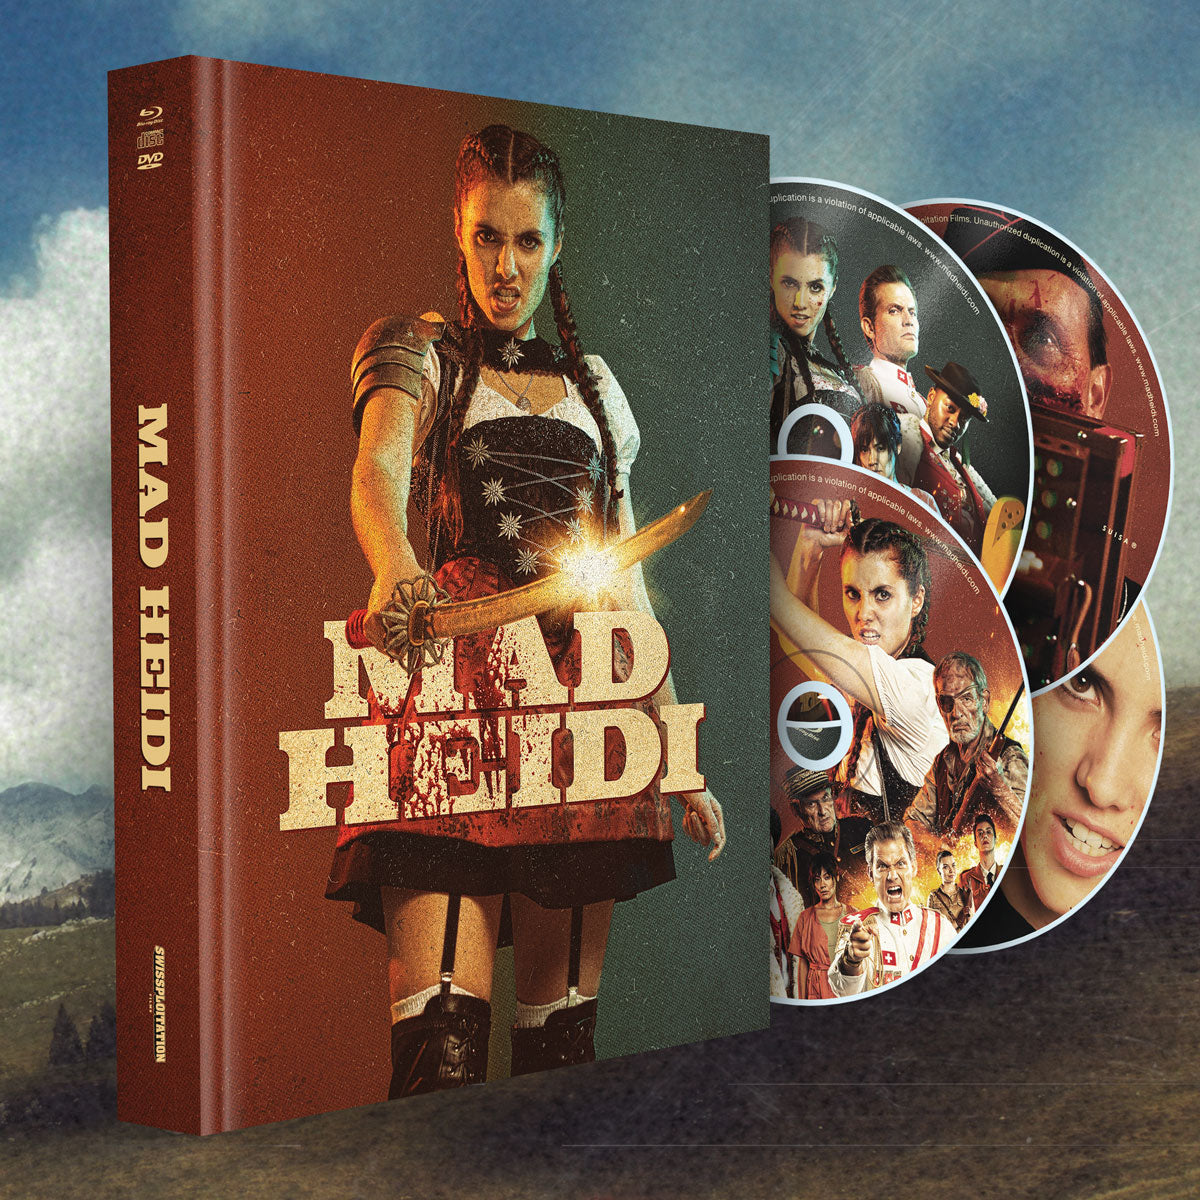 MadHeidi_Mediabook_Blu-ray-DVD-Soundtrack_1200x.jpg